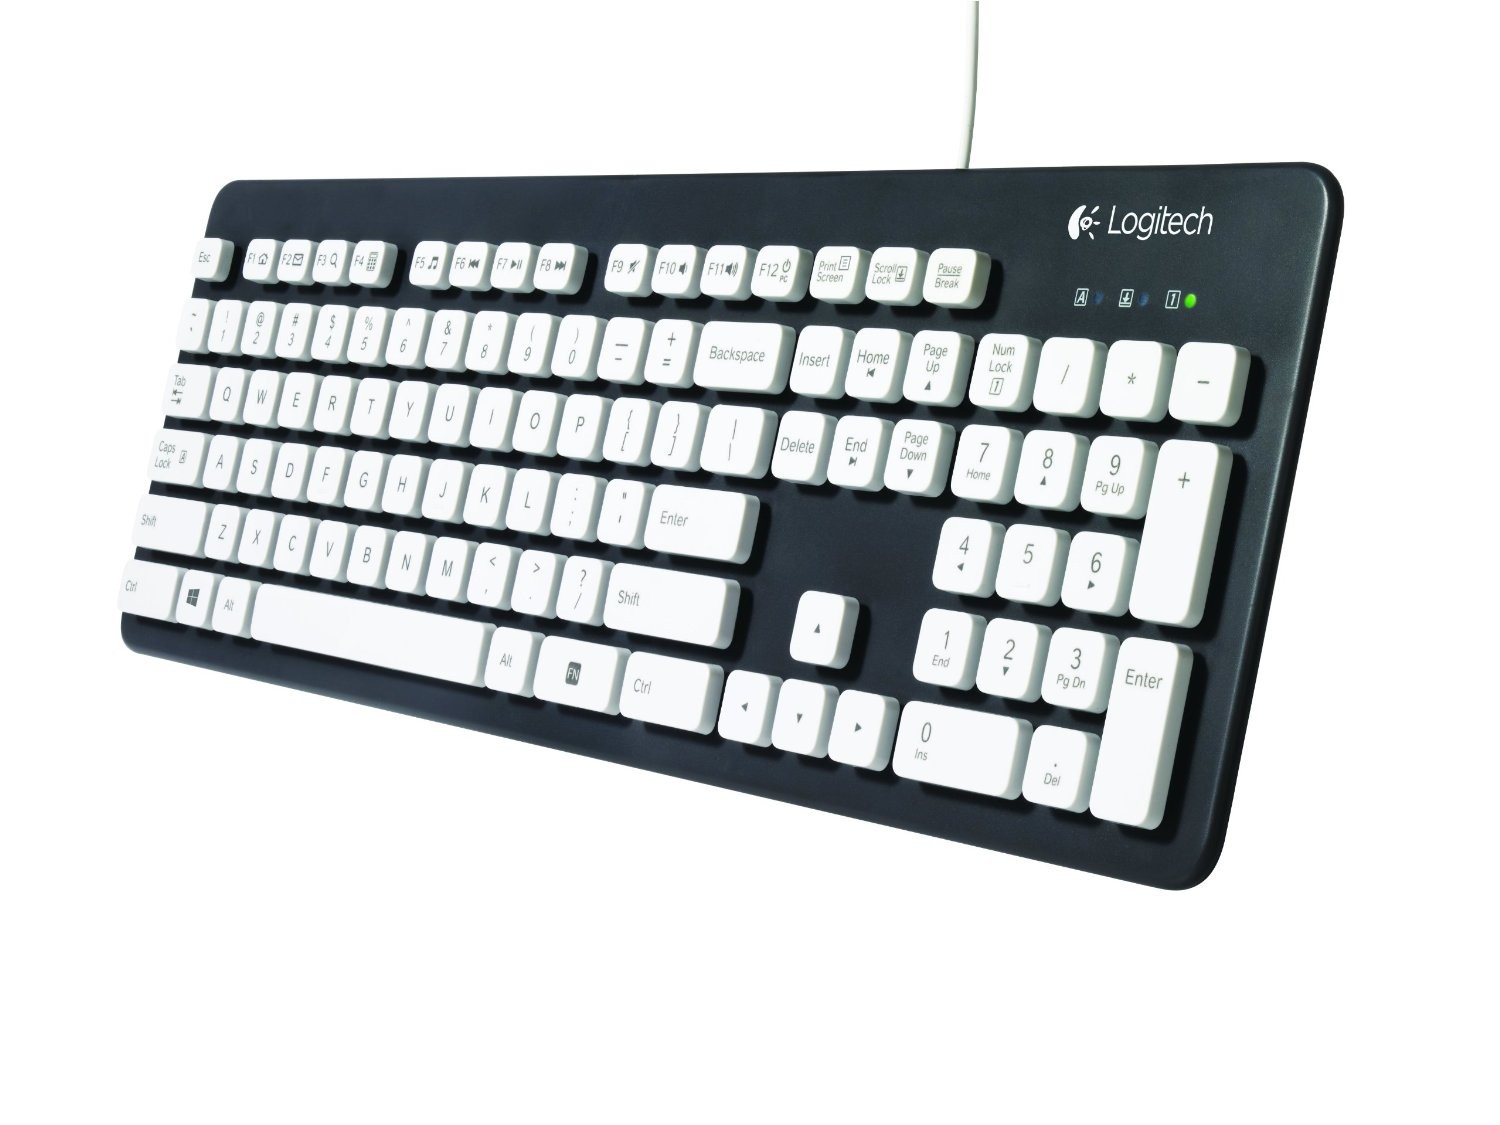 Keyboards - Keyboards & Mice - Peripherals